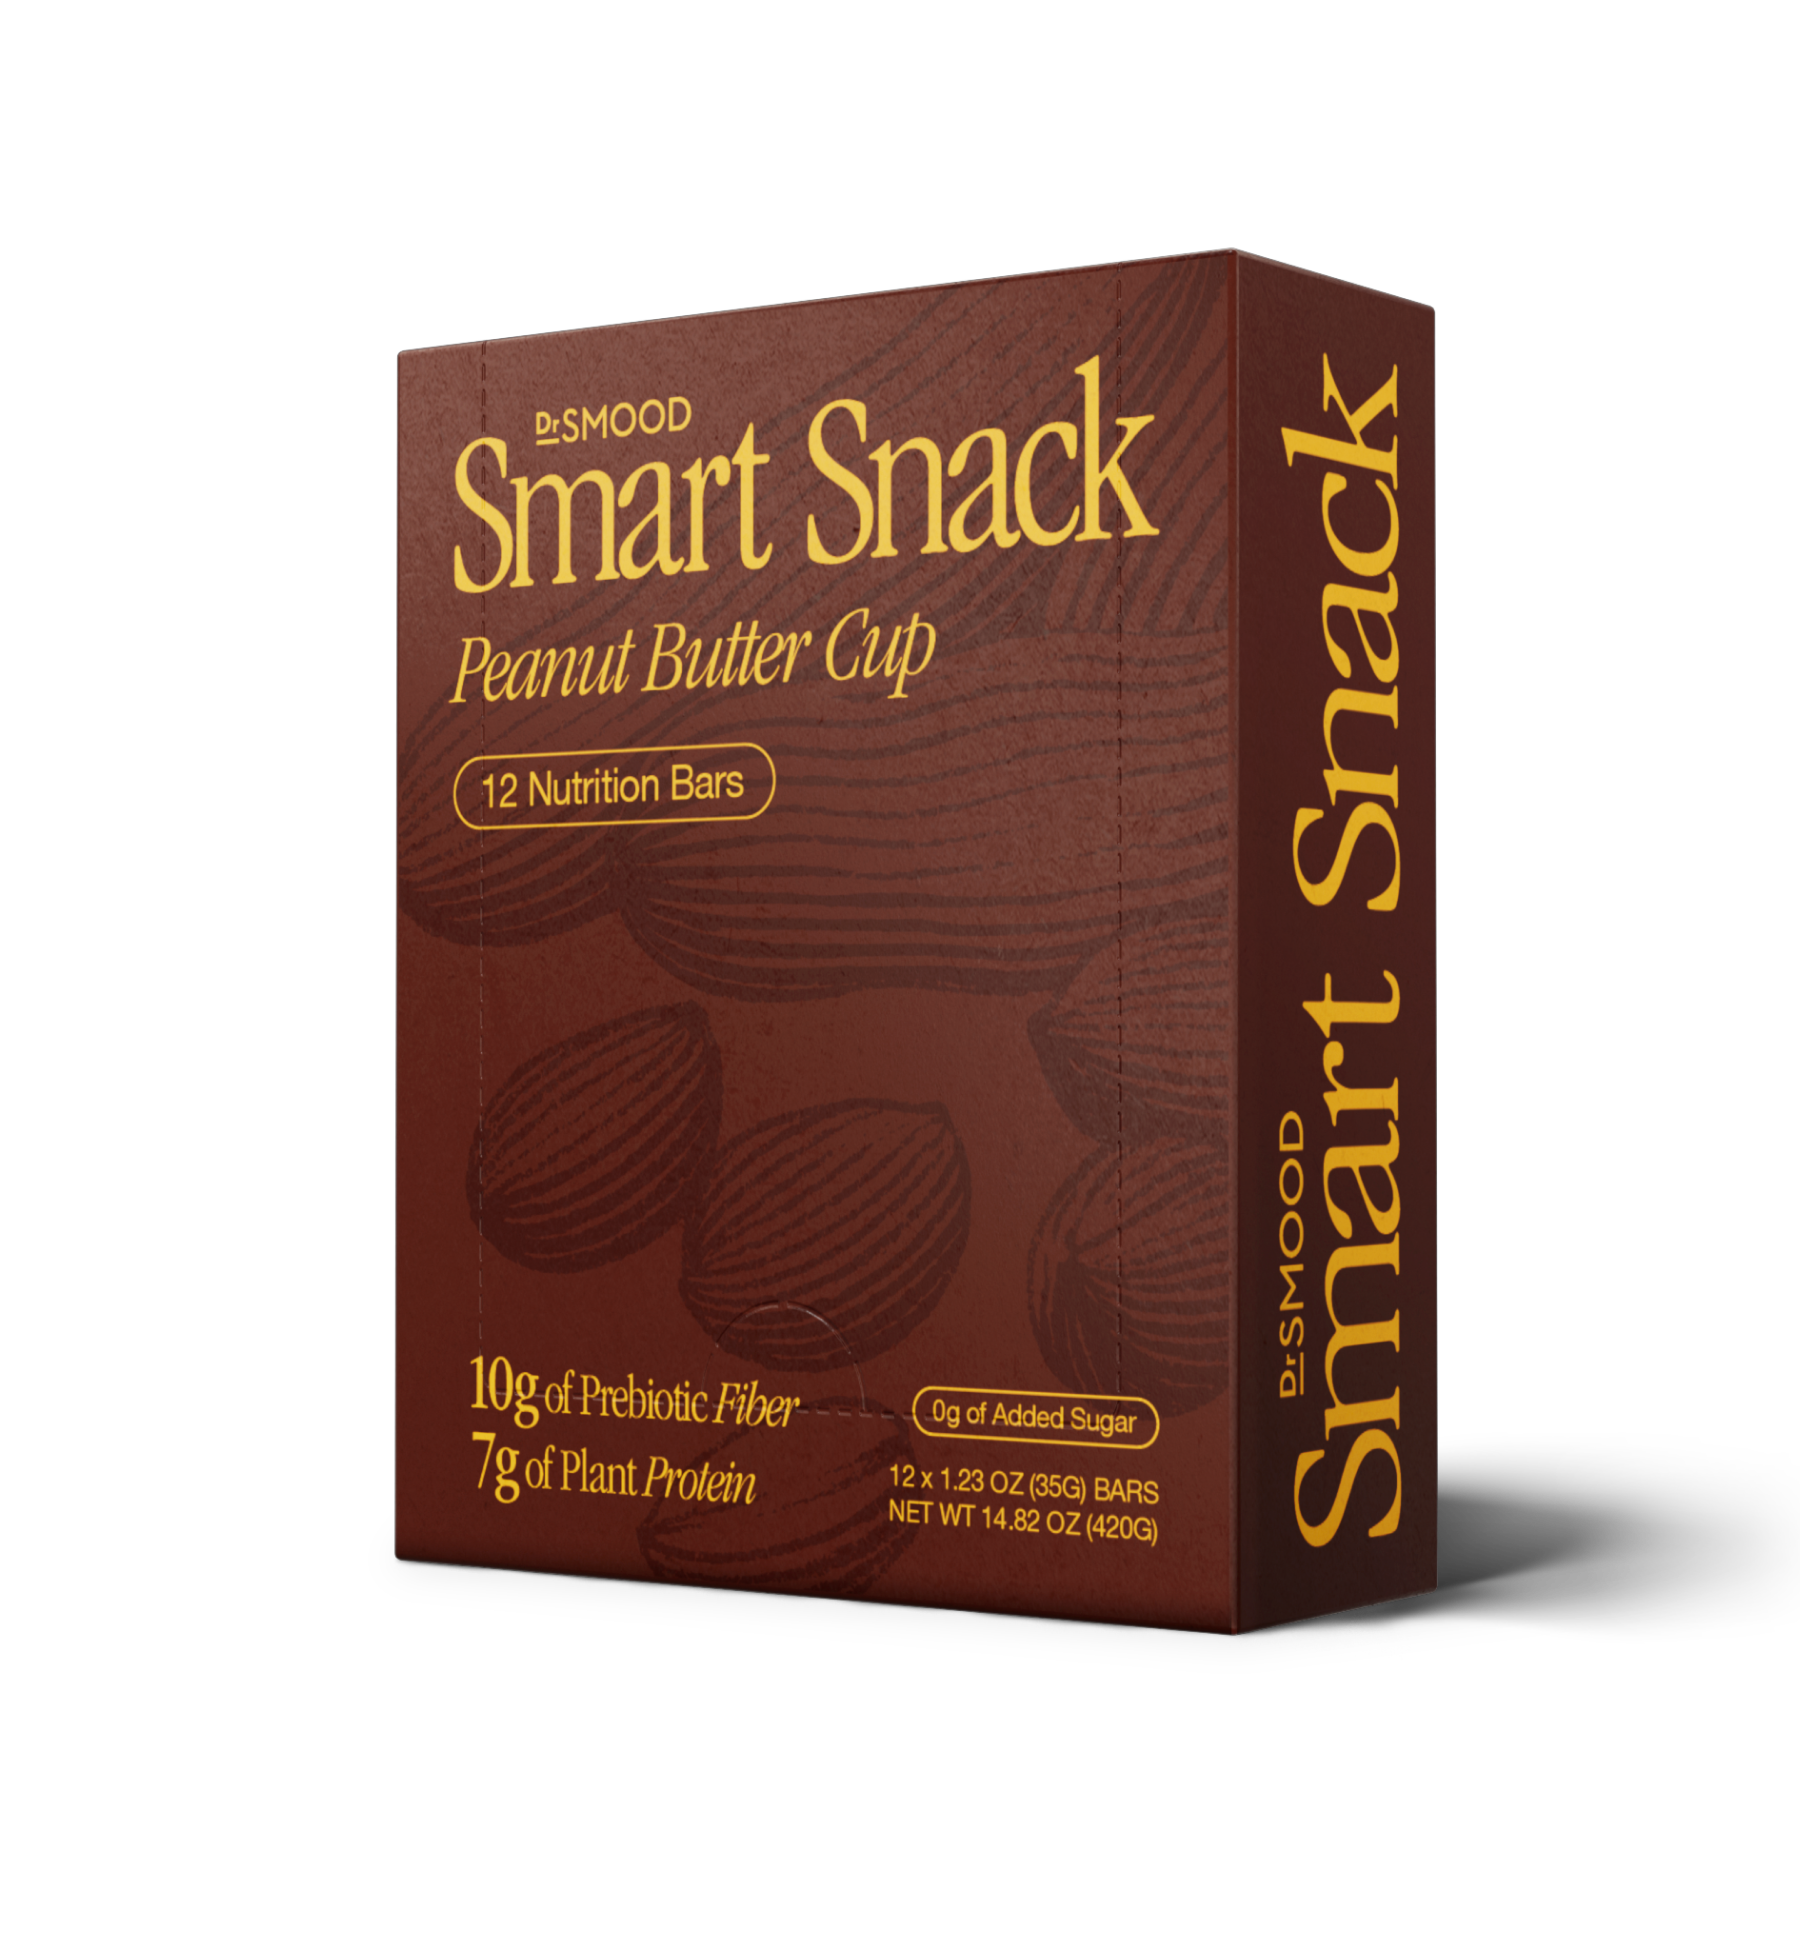 Smart Snack Peanut Butter Cup - PeanutButter_SS_PDP_2_23348bcb-e6f0-4083-98f5-d8dfcdb8379c